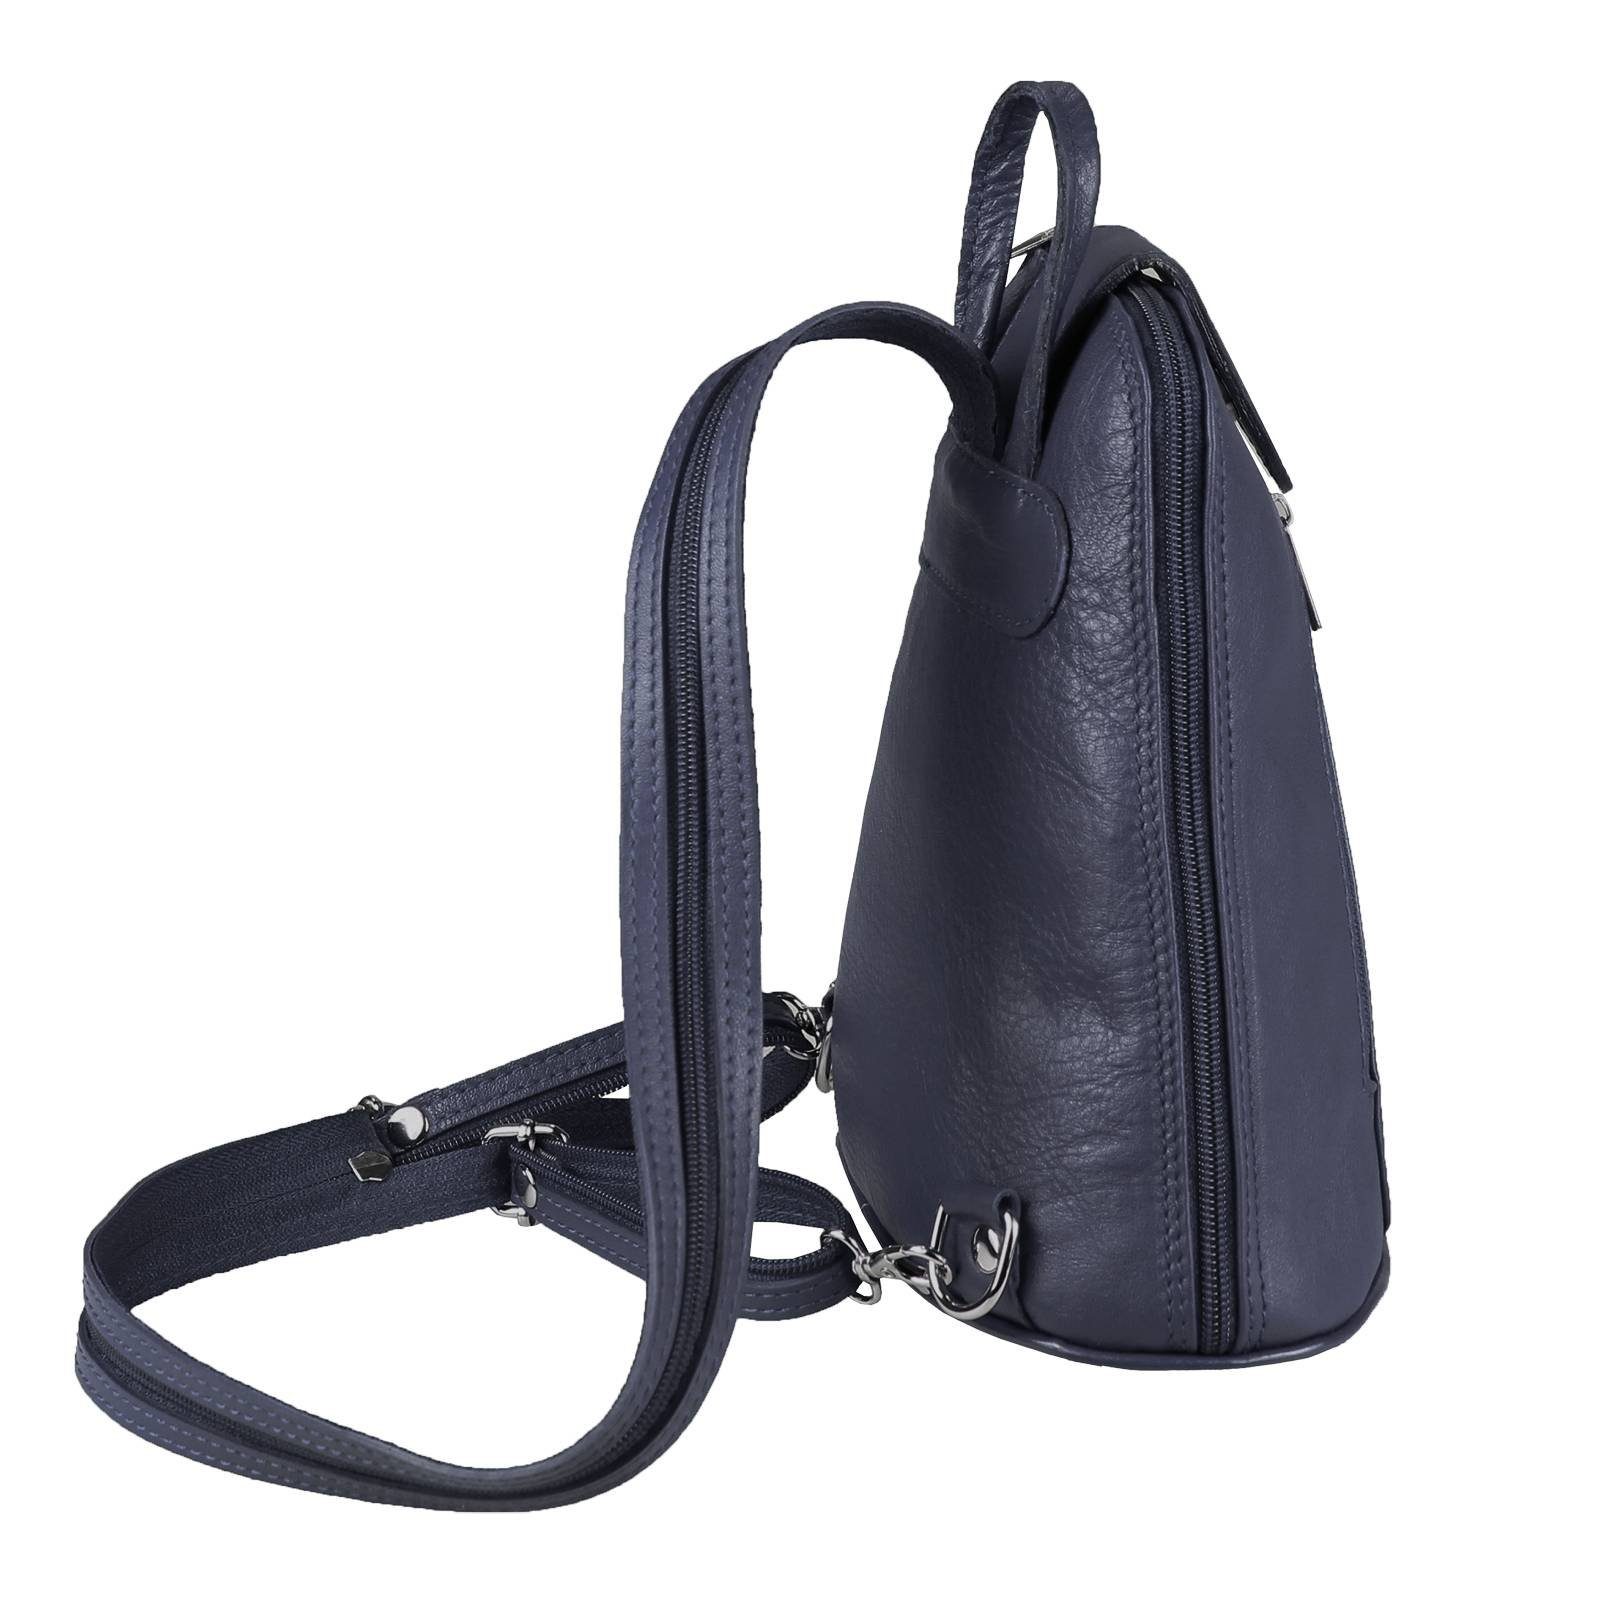 Damen Rucksäcke ITALYSHOP24 Rucksack Made in Italy Damen Leder Tasche Schultertasche, kleiner Rucksack, Umhängetasche / Handtasc